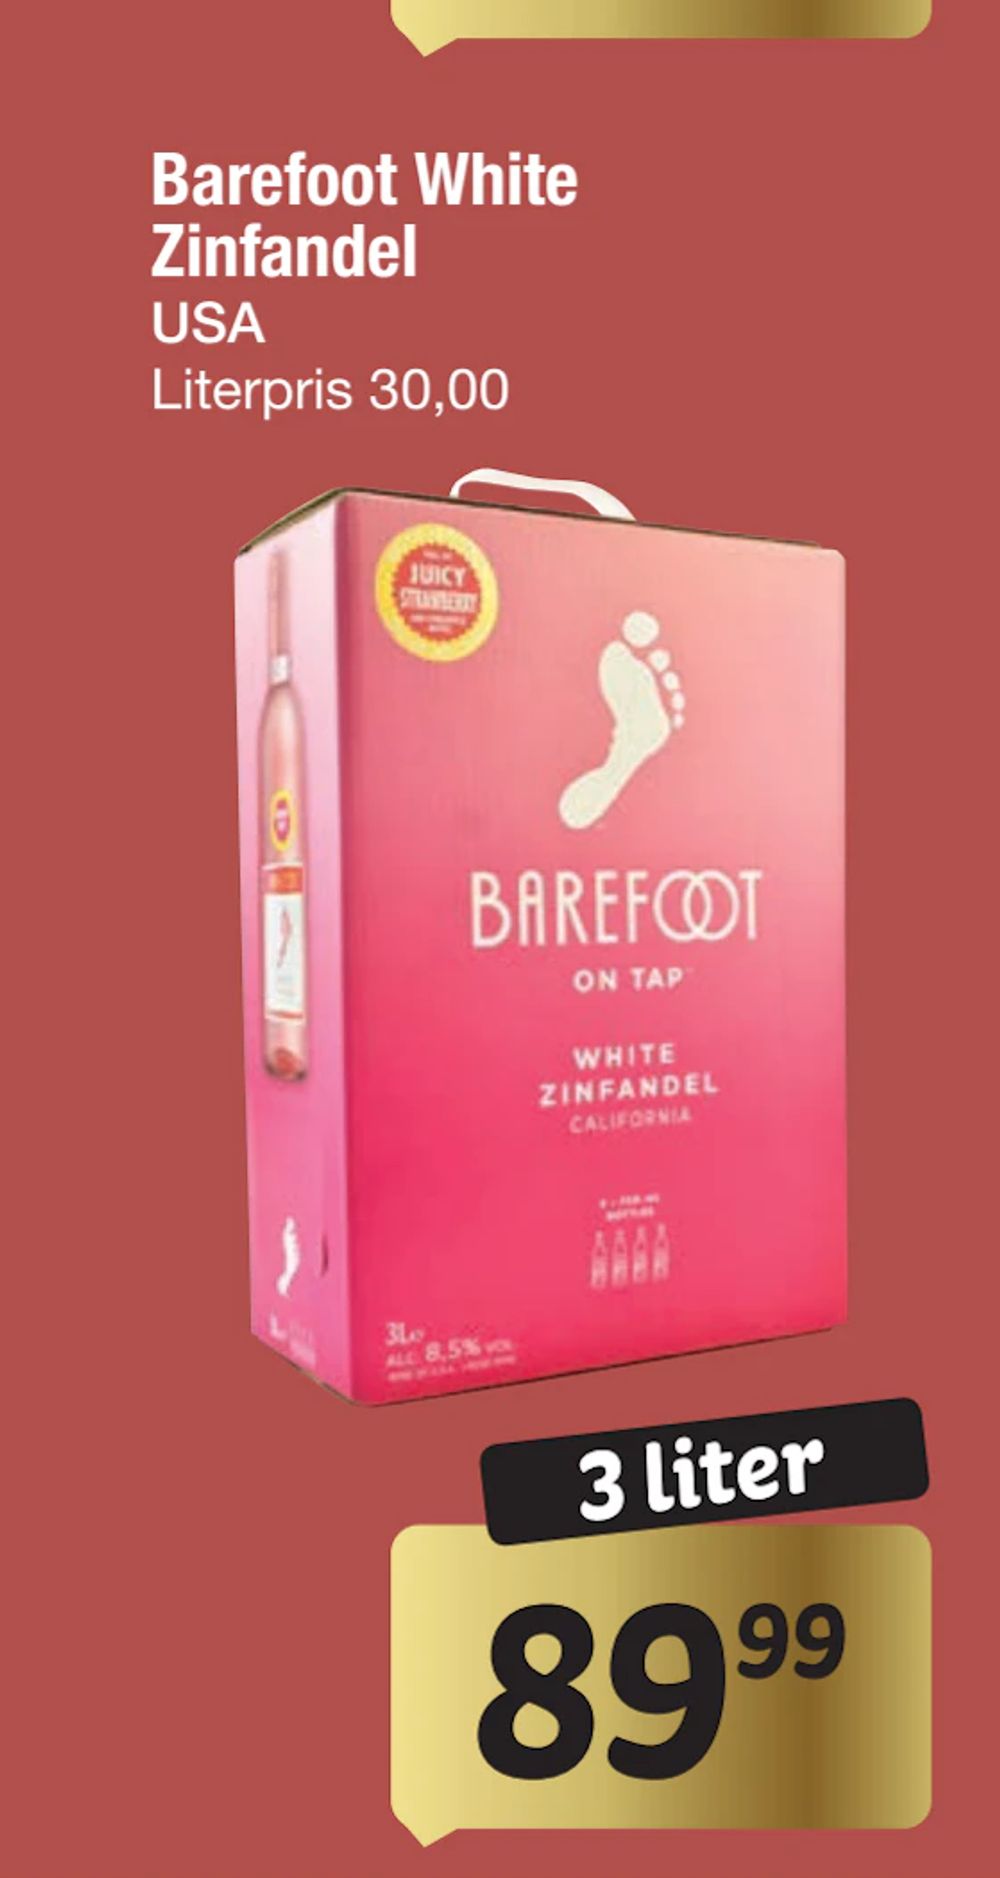 Tilbud på Barefoot White Zinfandel fra fakta Tyskland til 89,99 kr.